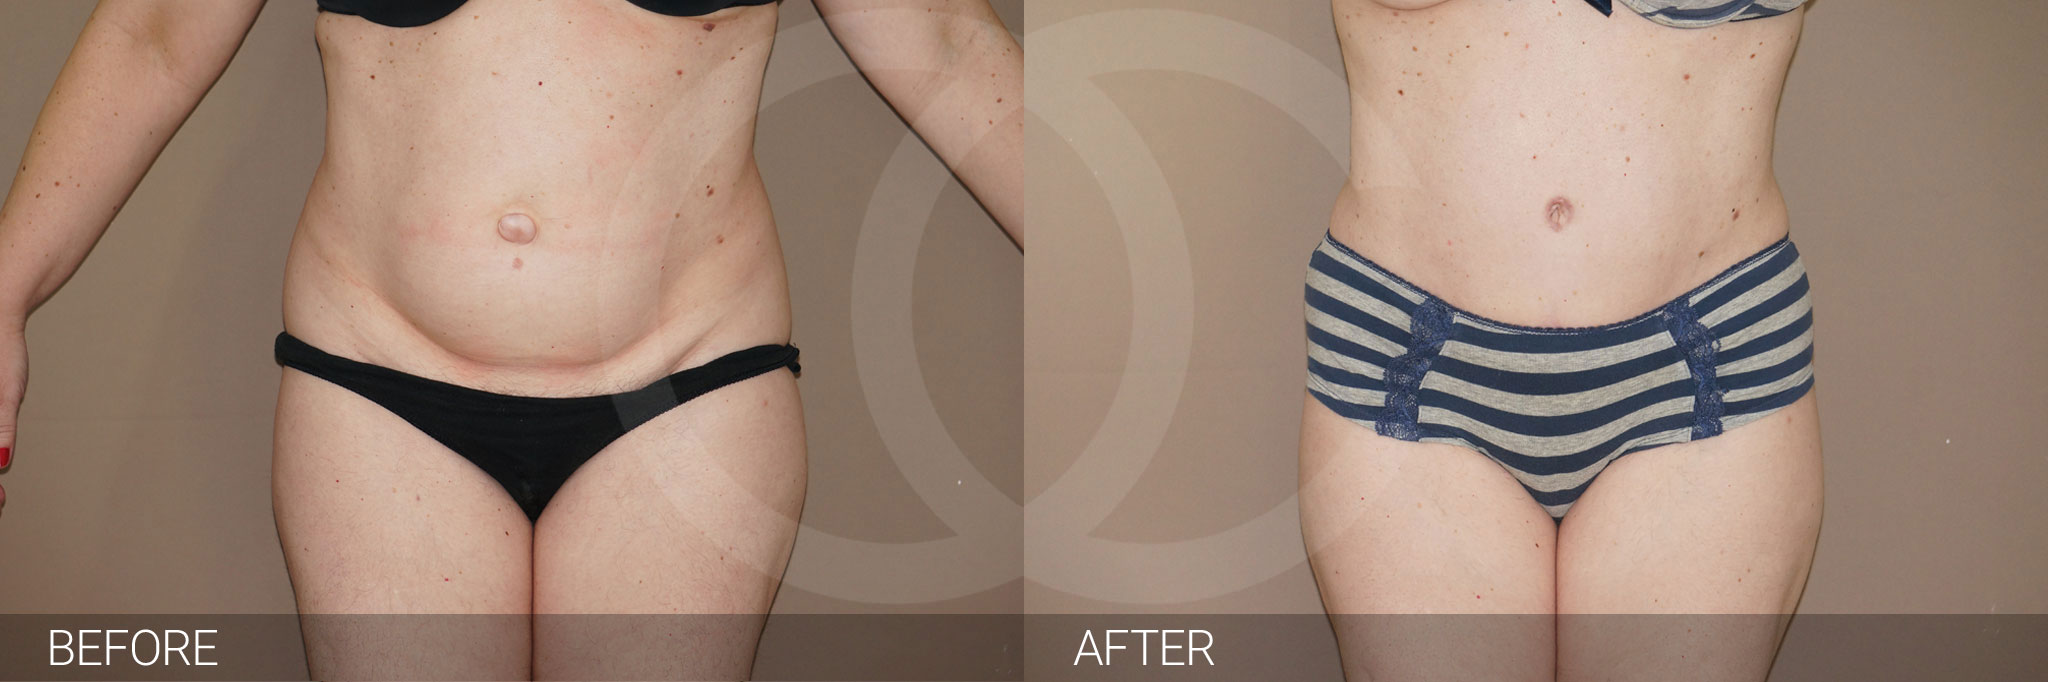 Antes y después Fotos de contorno abdominal fotos reales de pacientes 7.1 | Ocean Clinic Marbella Madrid